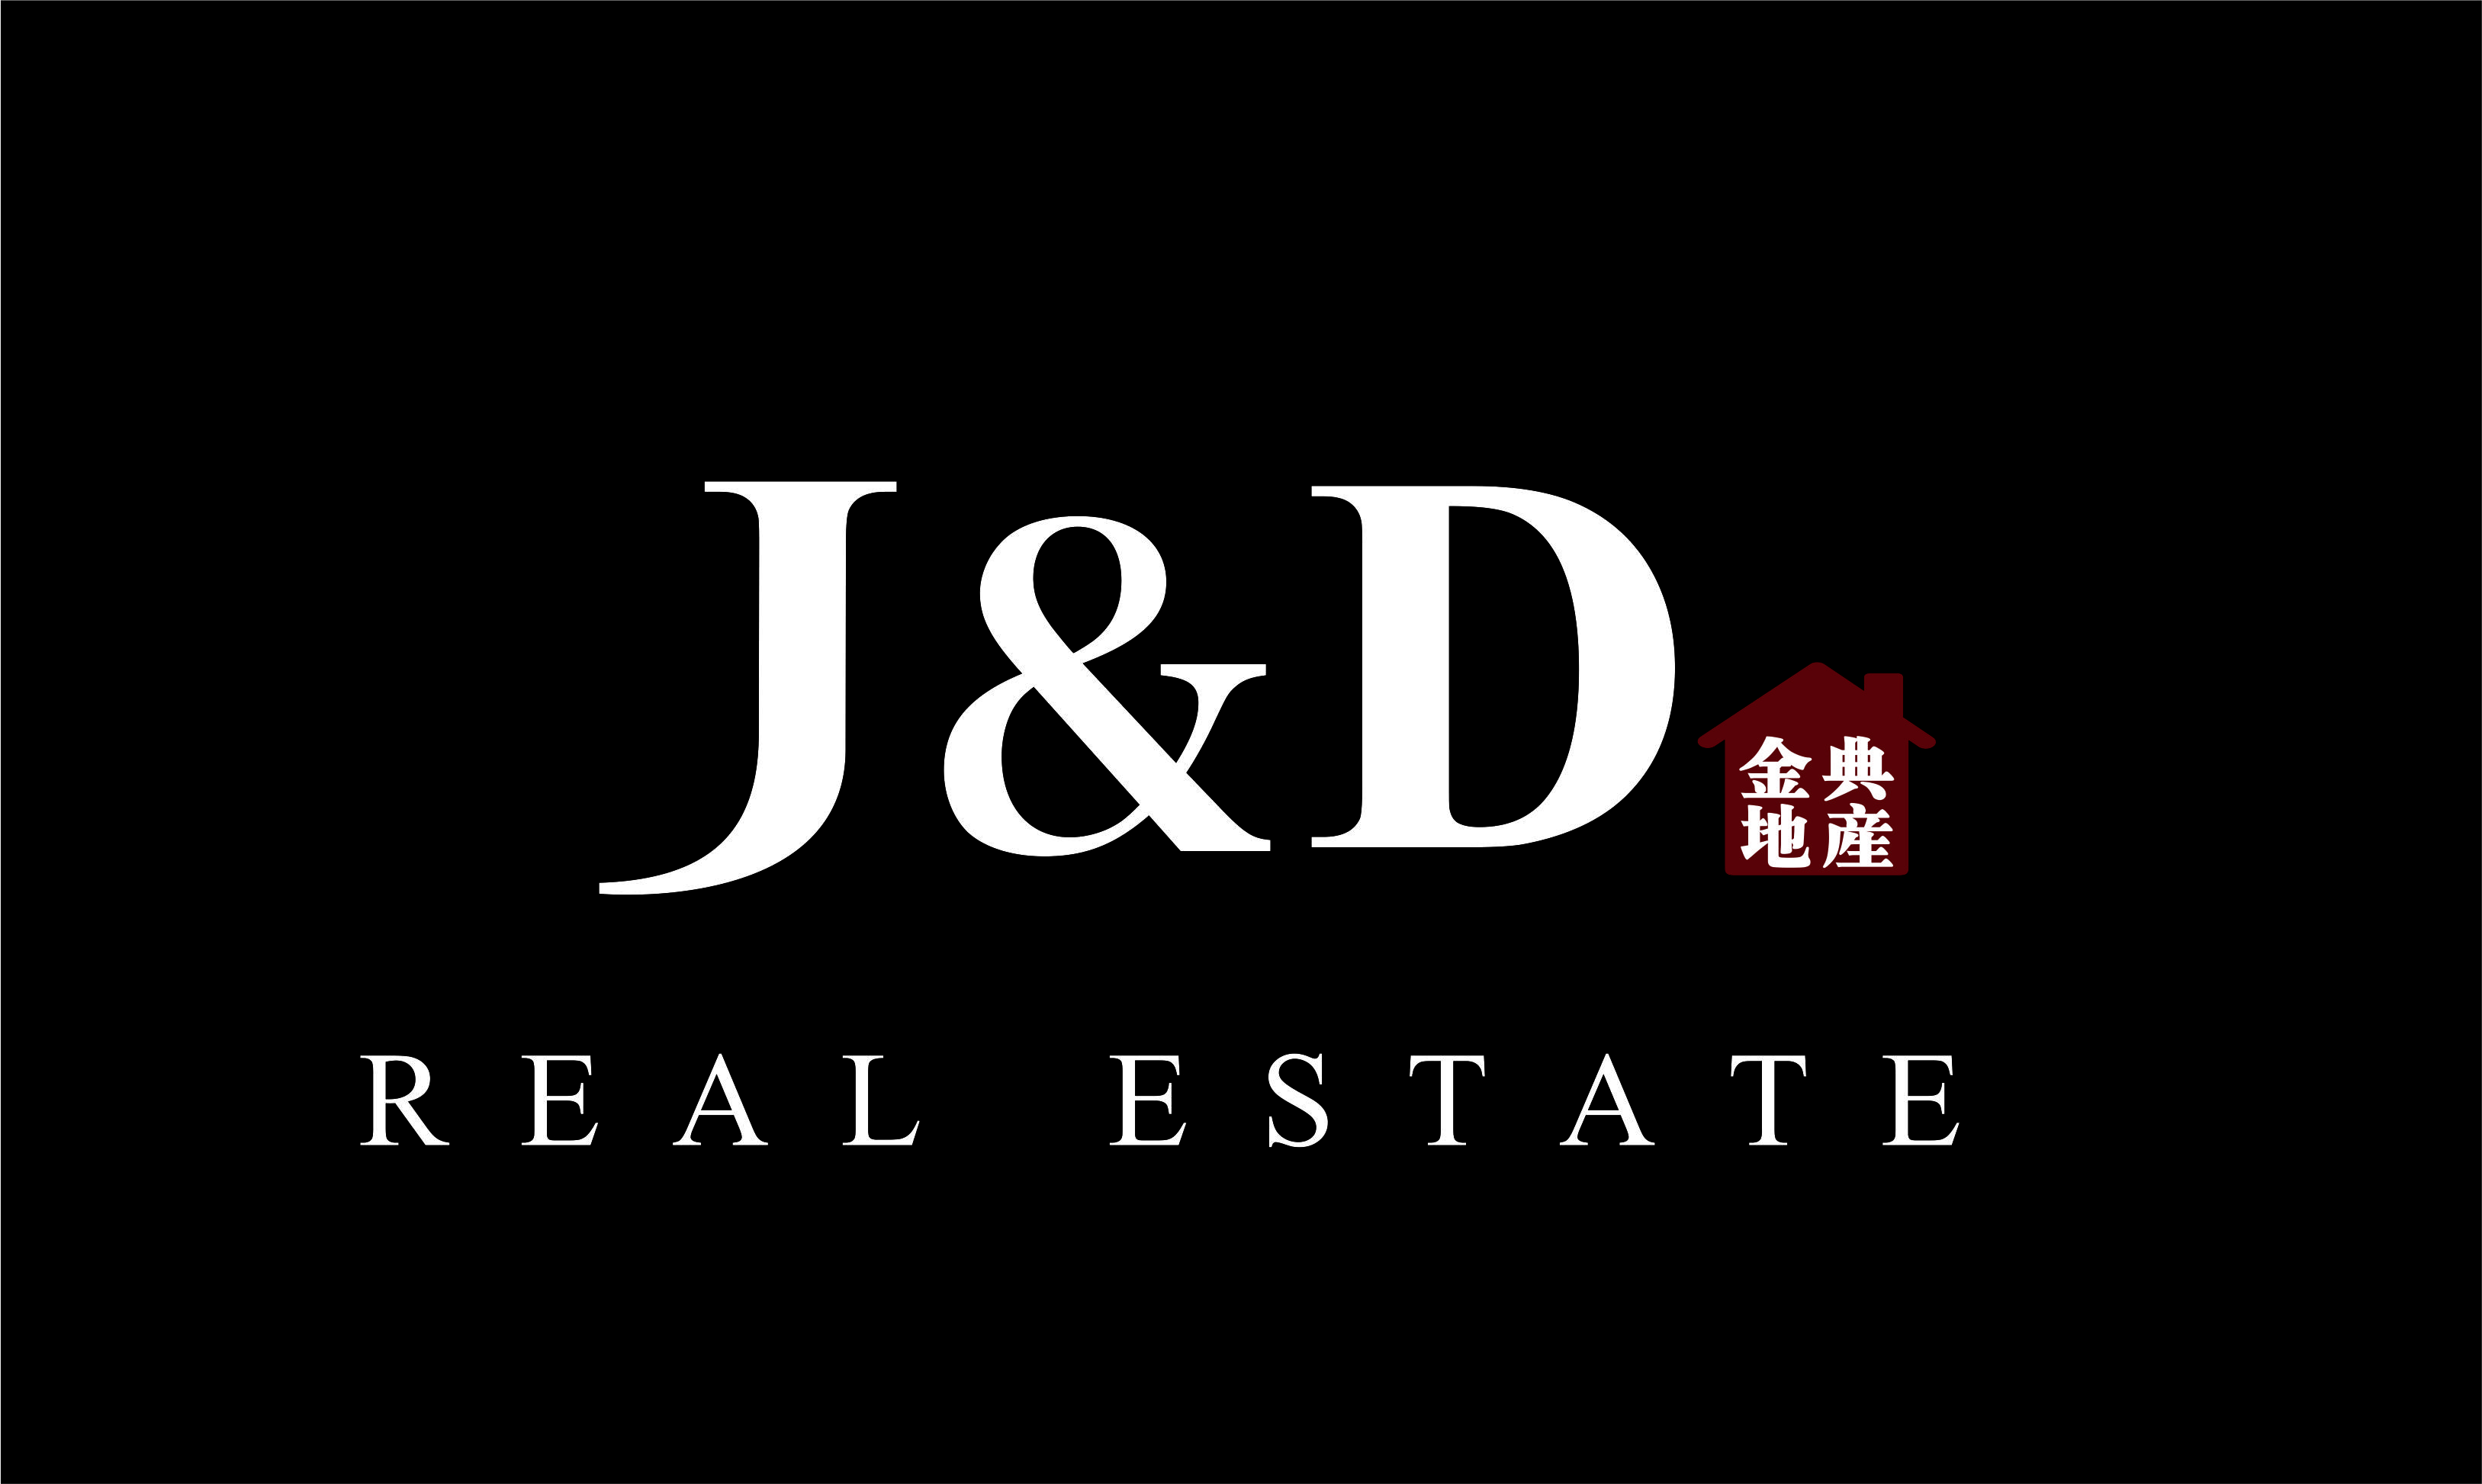 J&D Real Estate 金典地產